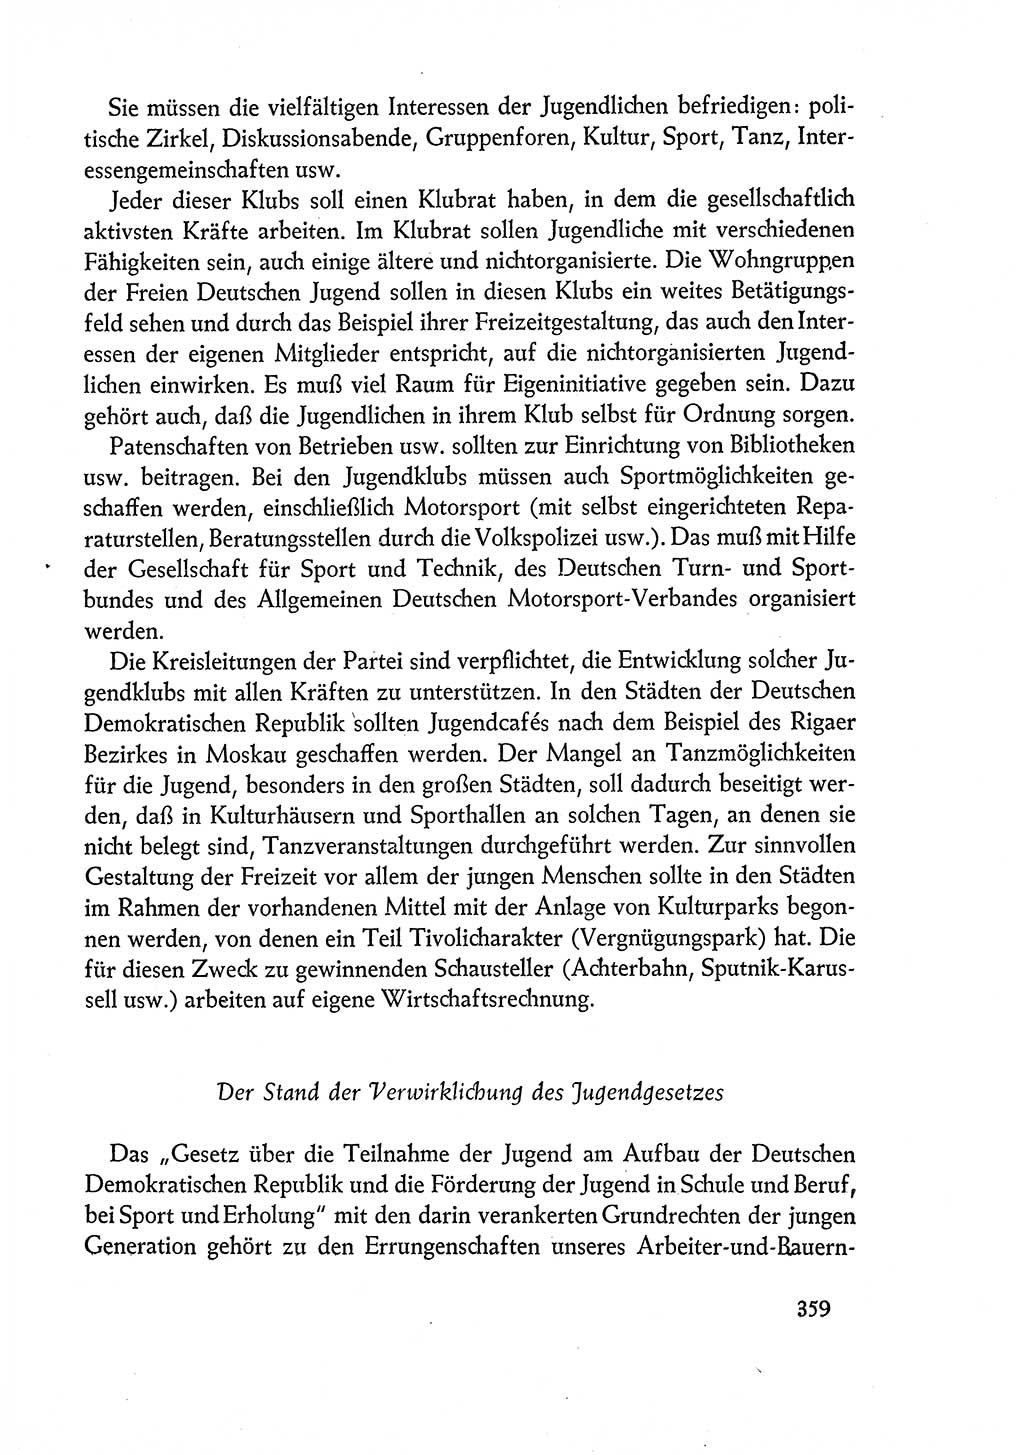 Dokumente der Sozialistischen Einheitspartei Deutschlands (SED) [Deutsche Demokratische Republik (DDR)] 1960-1961, Seite 359 (Dok. SED DDR 1960-1961, S. 359)